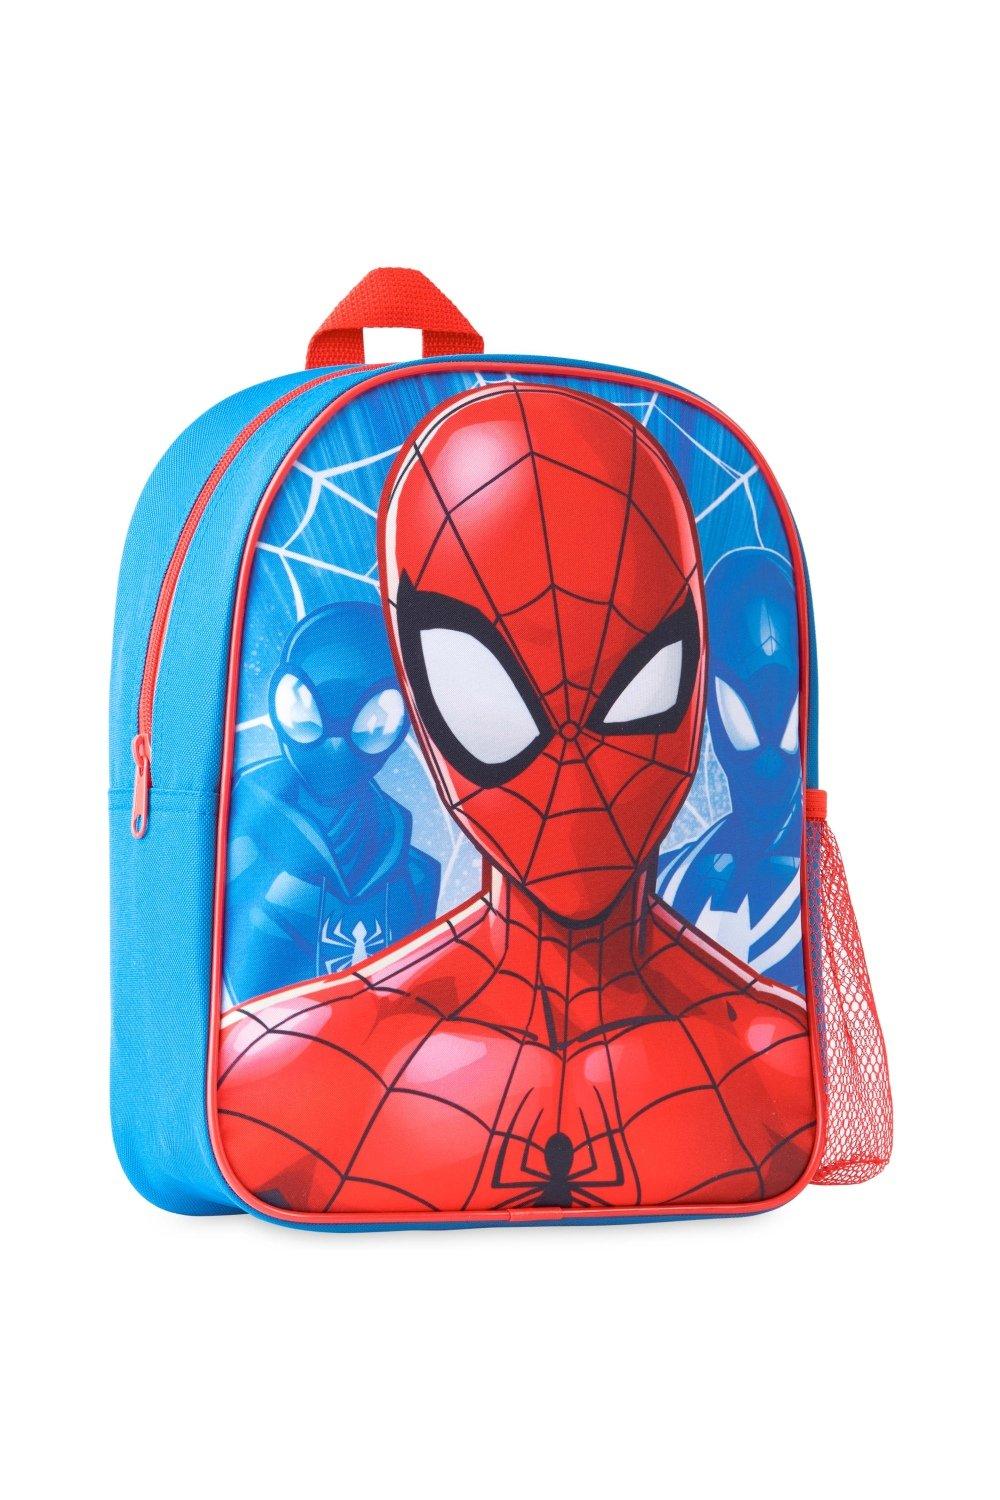 Школьный рюкзак Человека-паука Marvel, мультиколор рюкзак человека паука с подсветкой глаз marvel синий